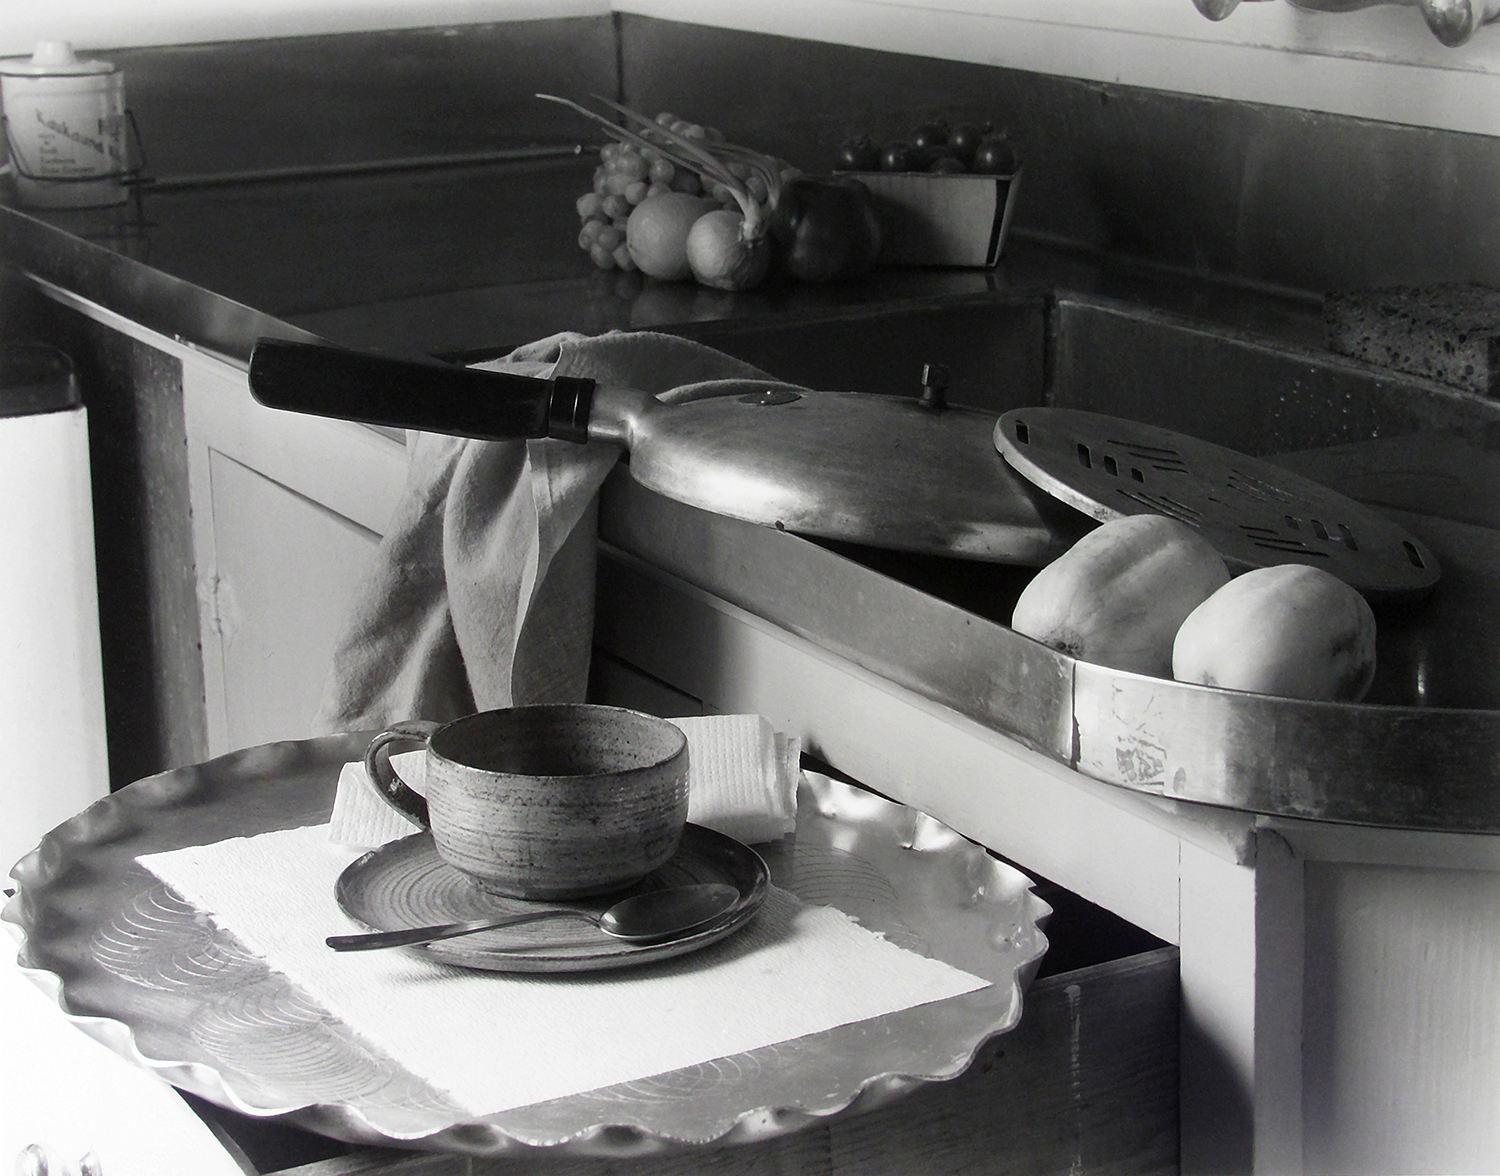 Imogen Cunningham, My Kitchen Sink, 1947, with the recipe: Imogen Cunningham's Borscht.